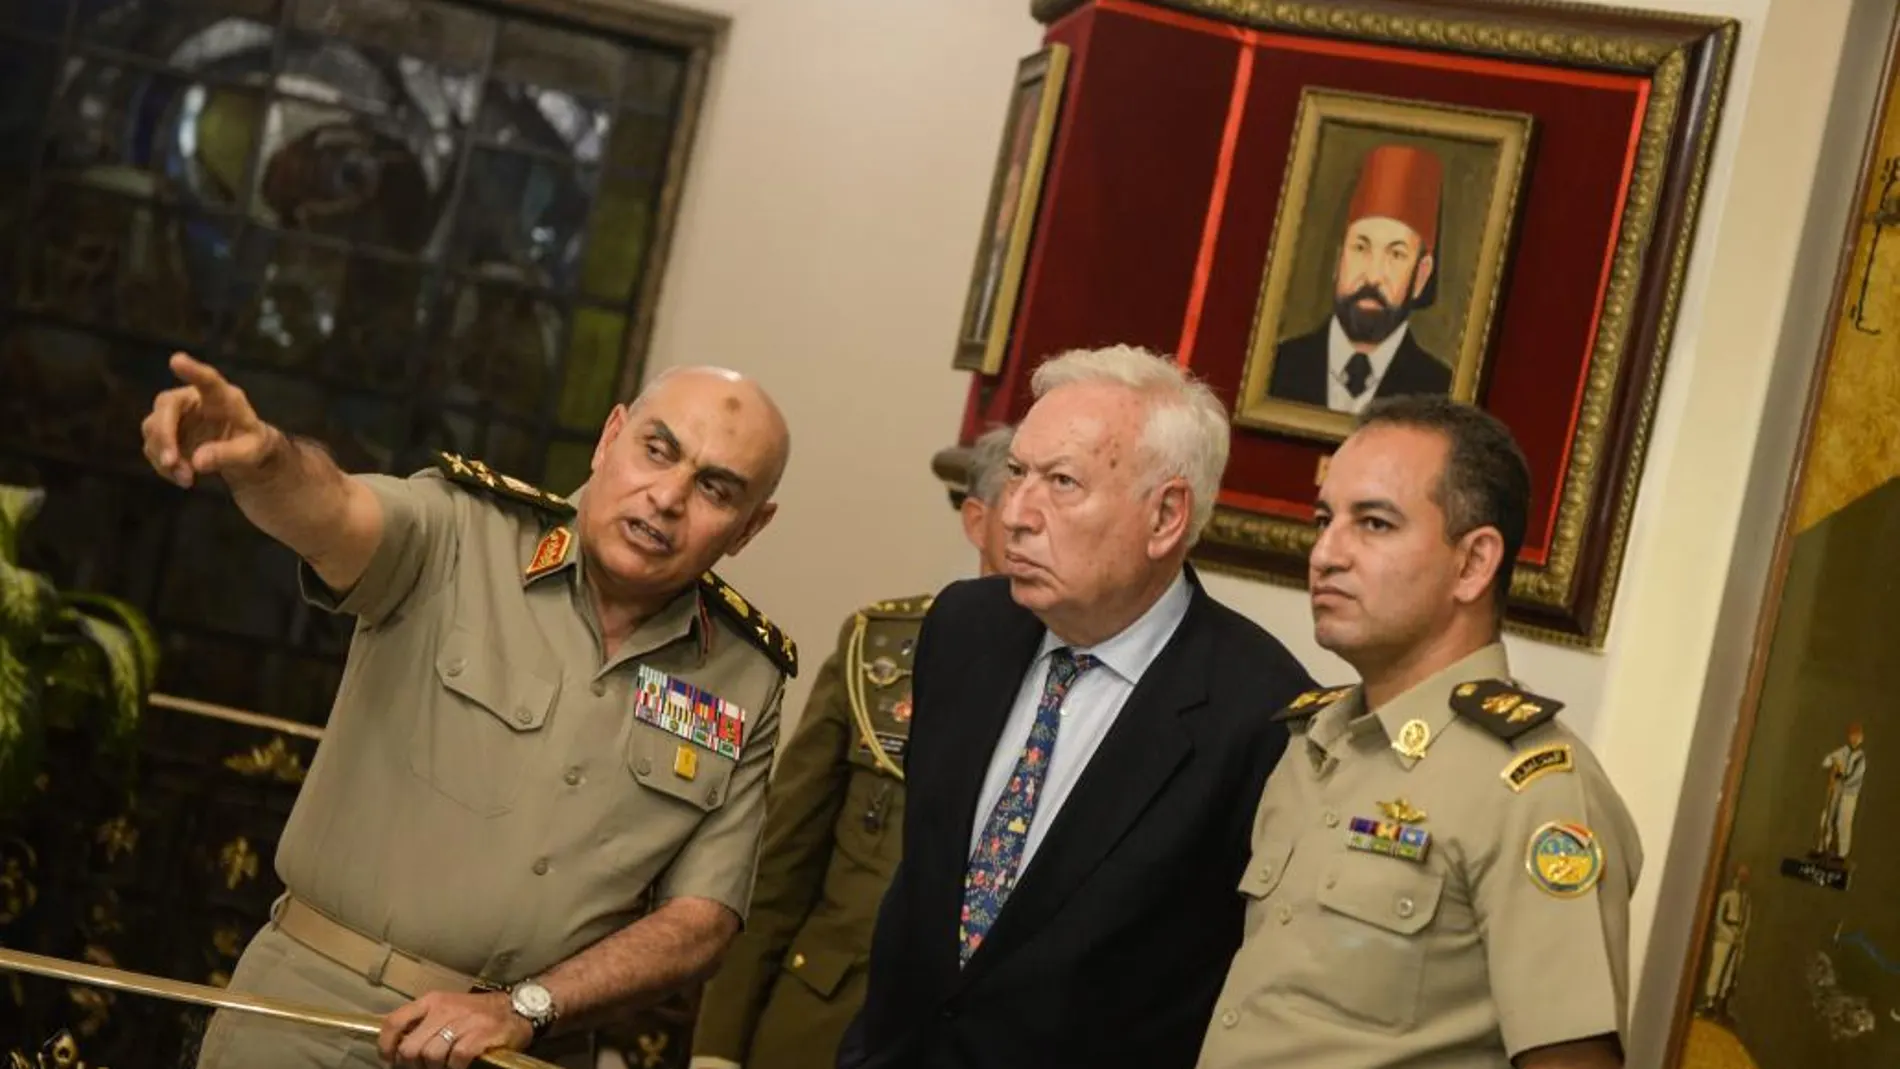 Jose Manuel Garcia-Margallo durante el encuentro con el ministro de defensa de Egipto, Izquierda, Sedki Sobhi